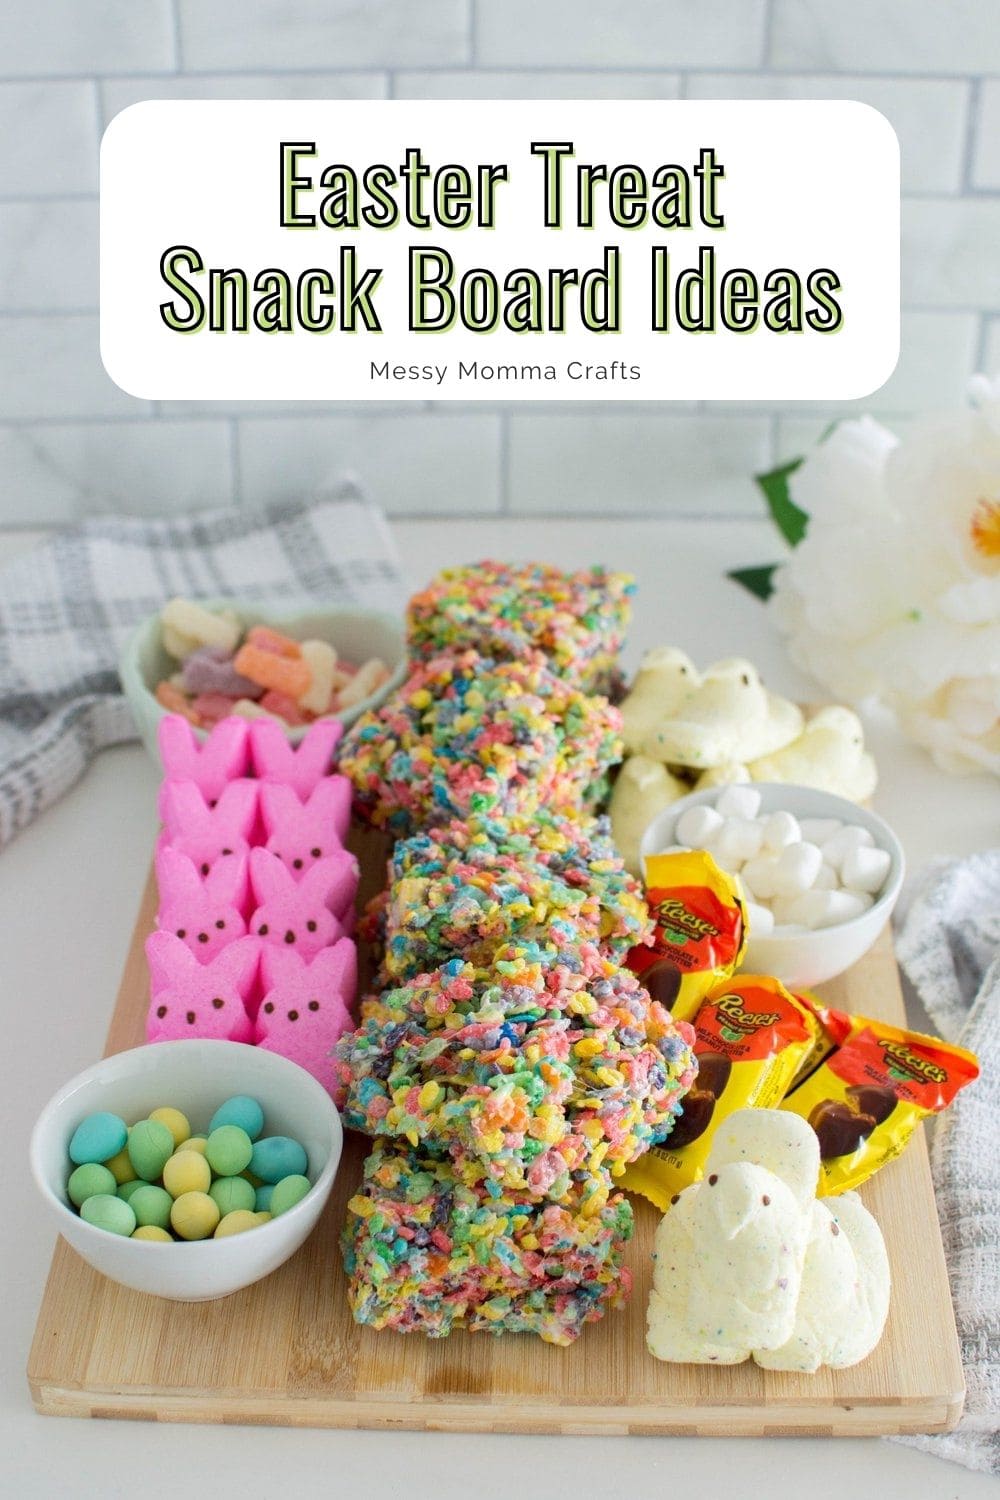 Easter treat snack board ideas.